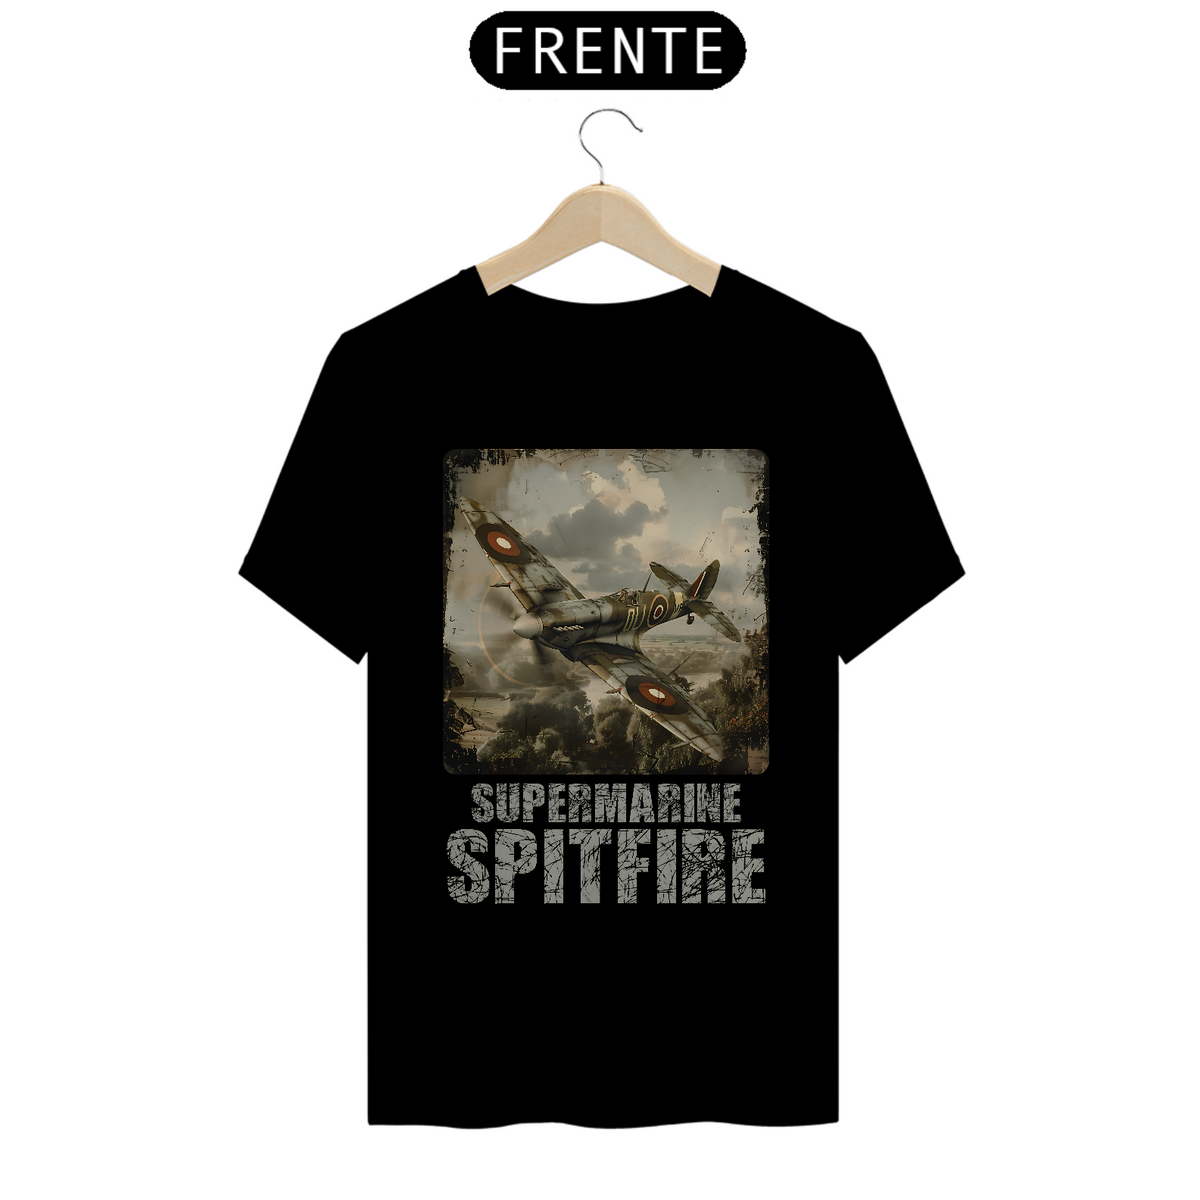 Nome do produto: Supermarine Spitfire